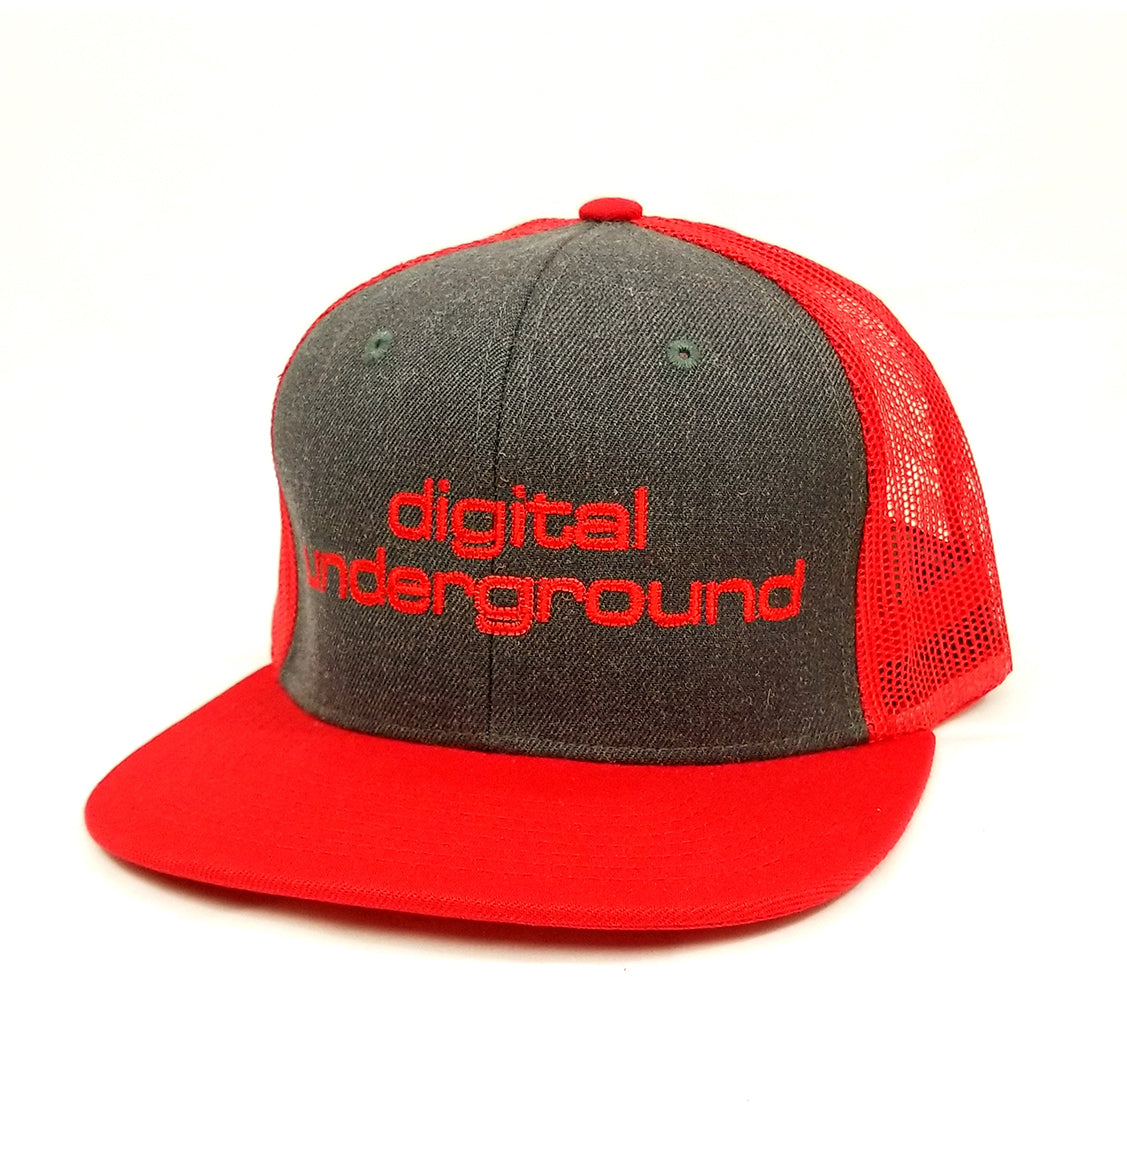 digital-underground-red-charcoal-digital-underground-trucker-hat